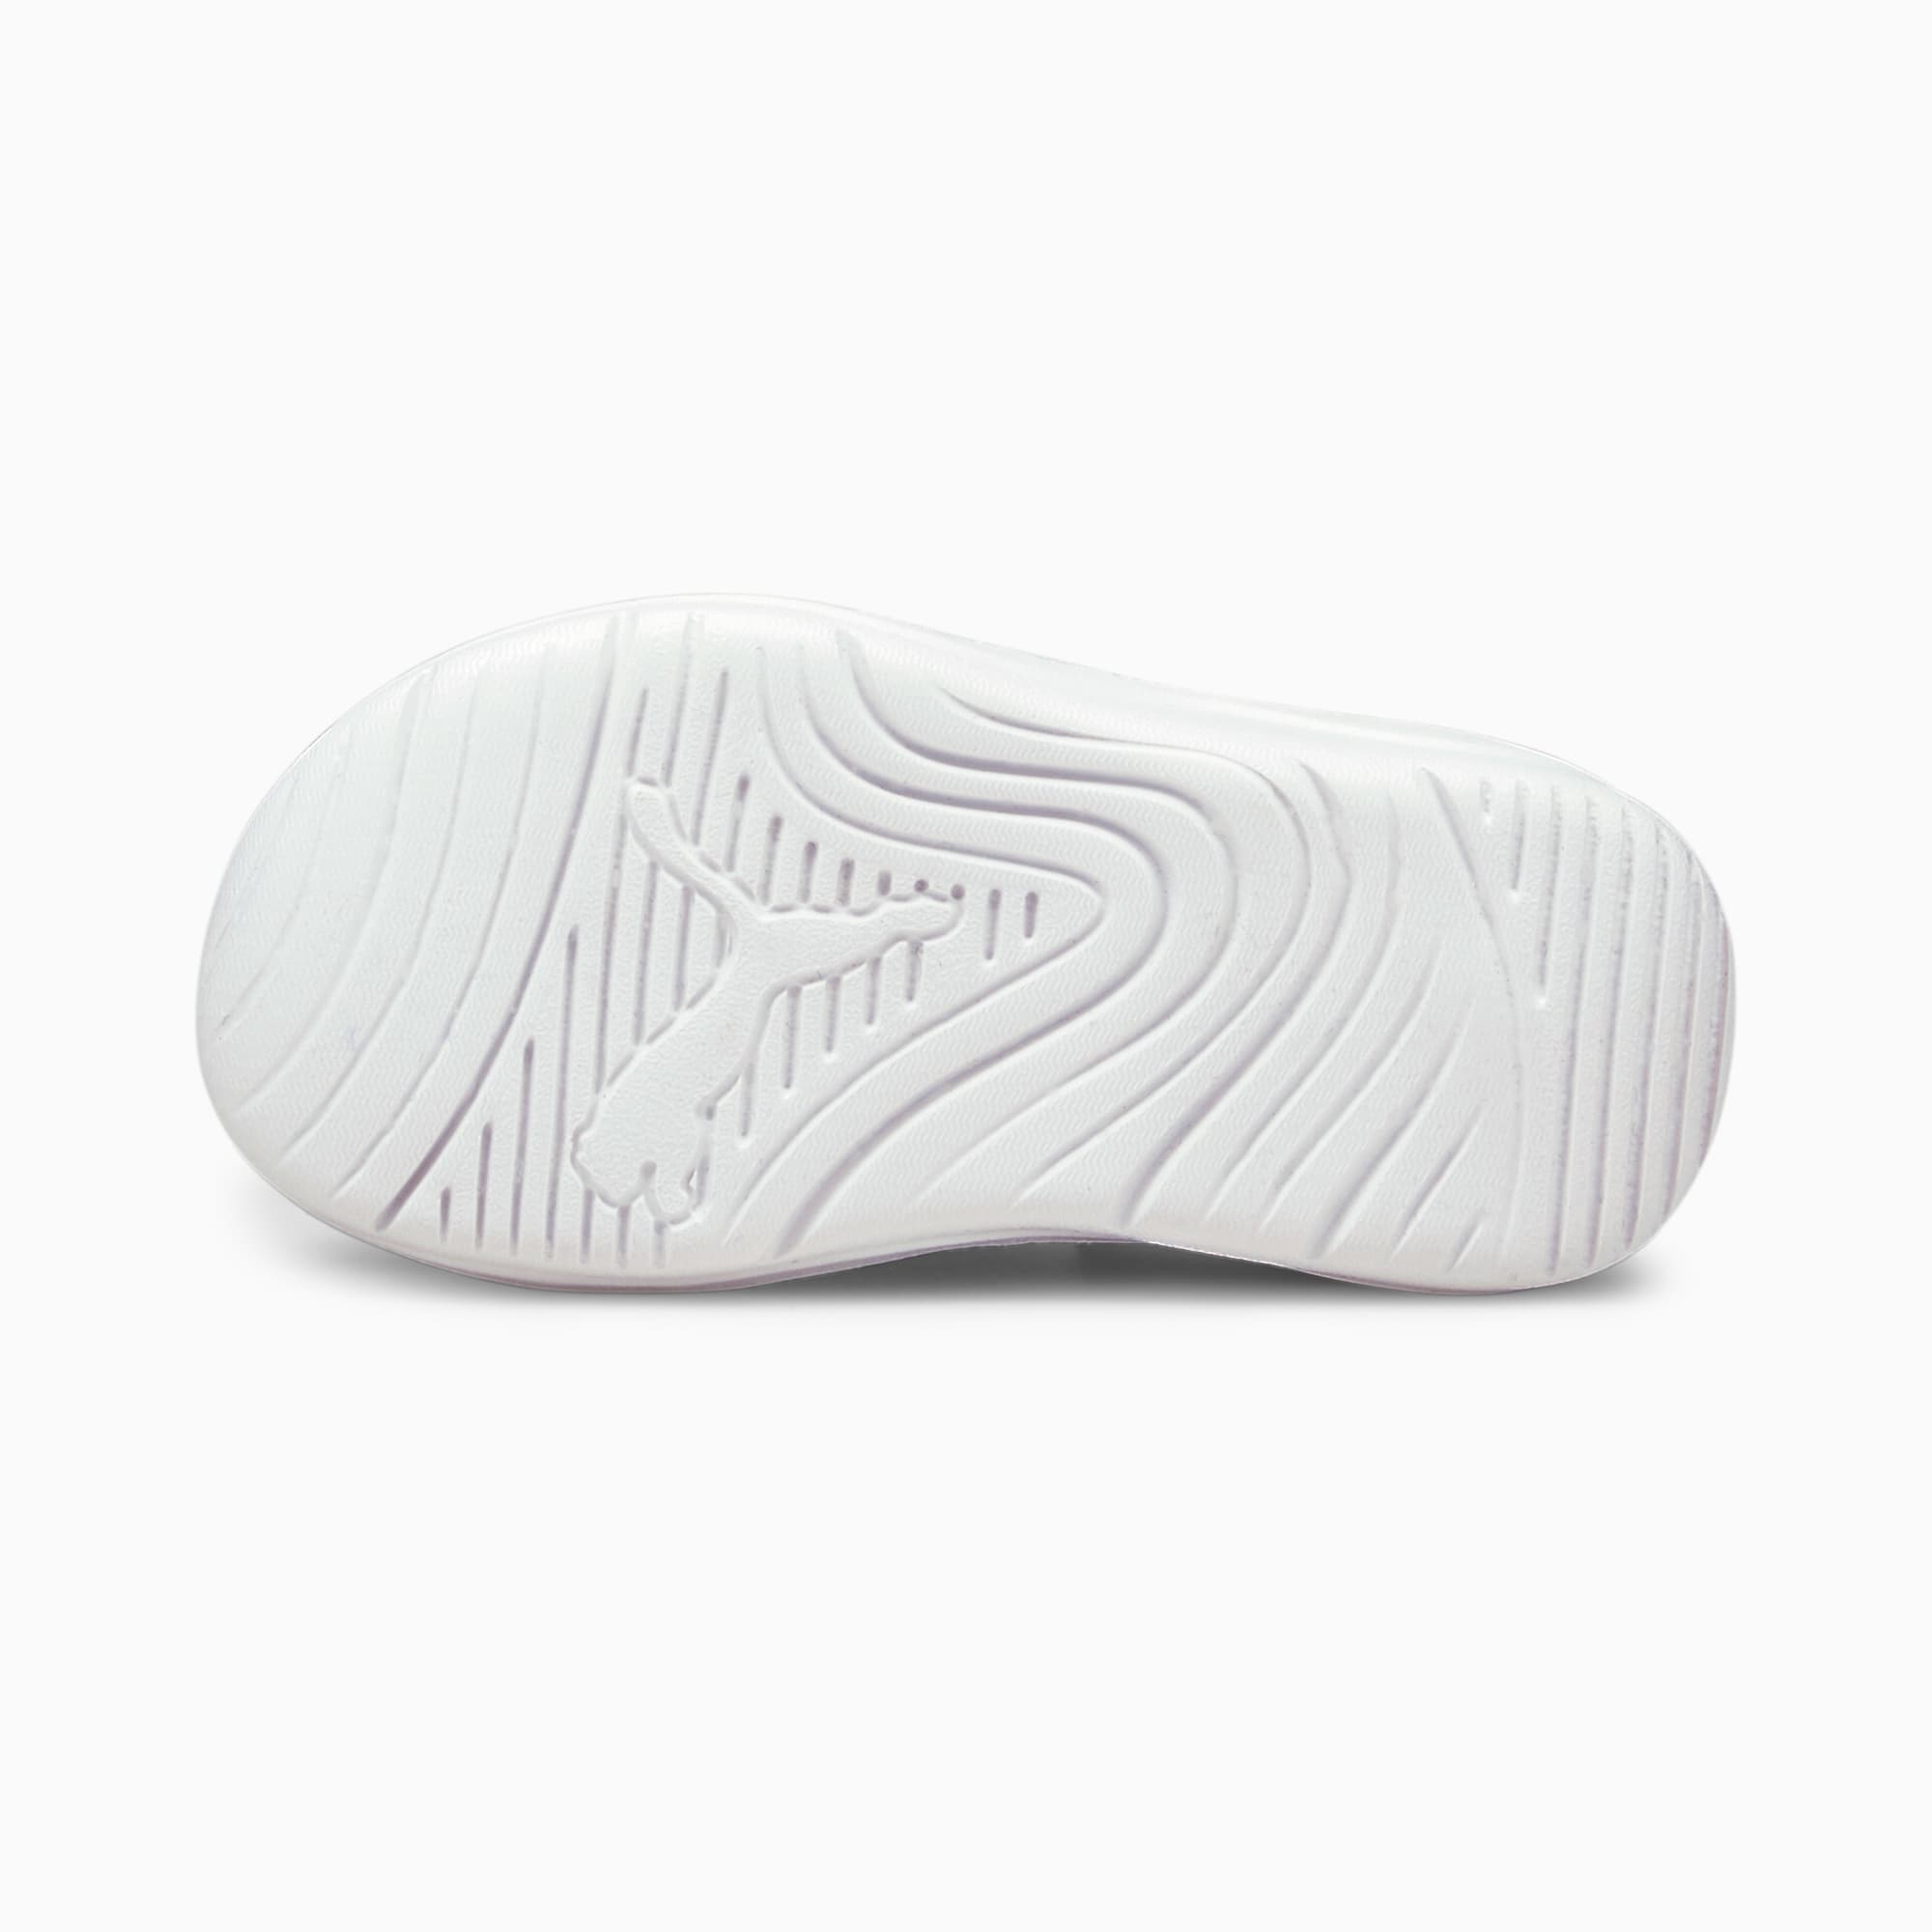 PUMA Zapatillas Para Bebé Aquacat Shield, Blanco/Negro